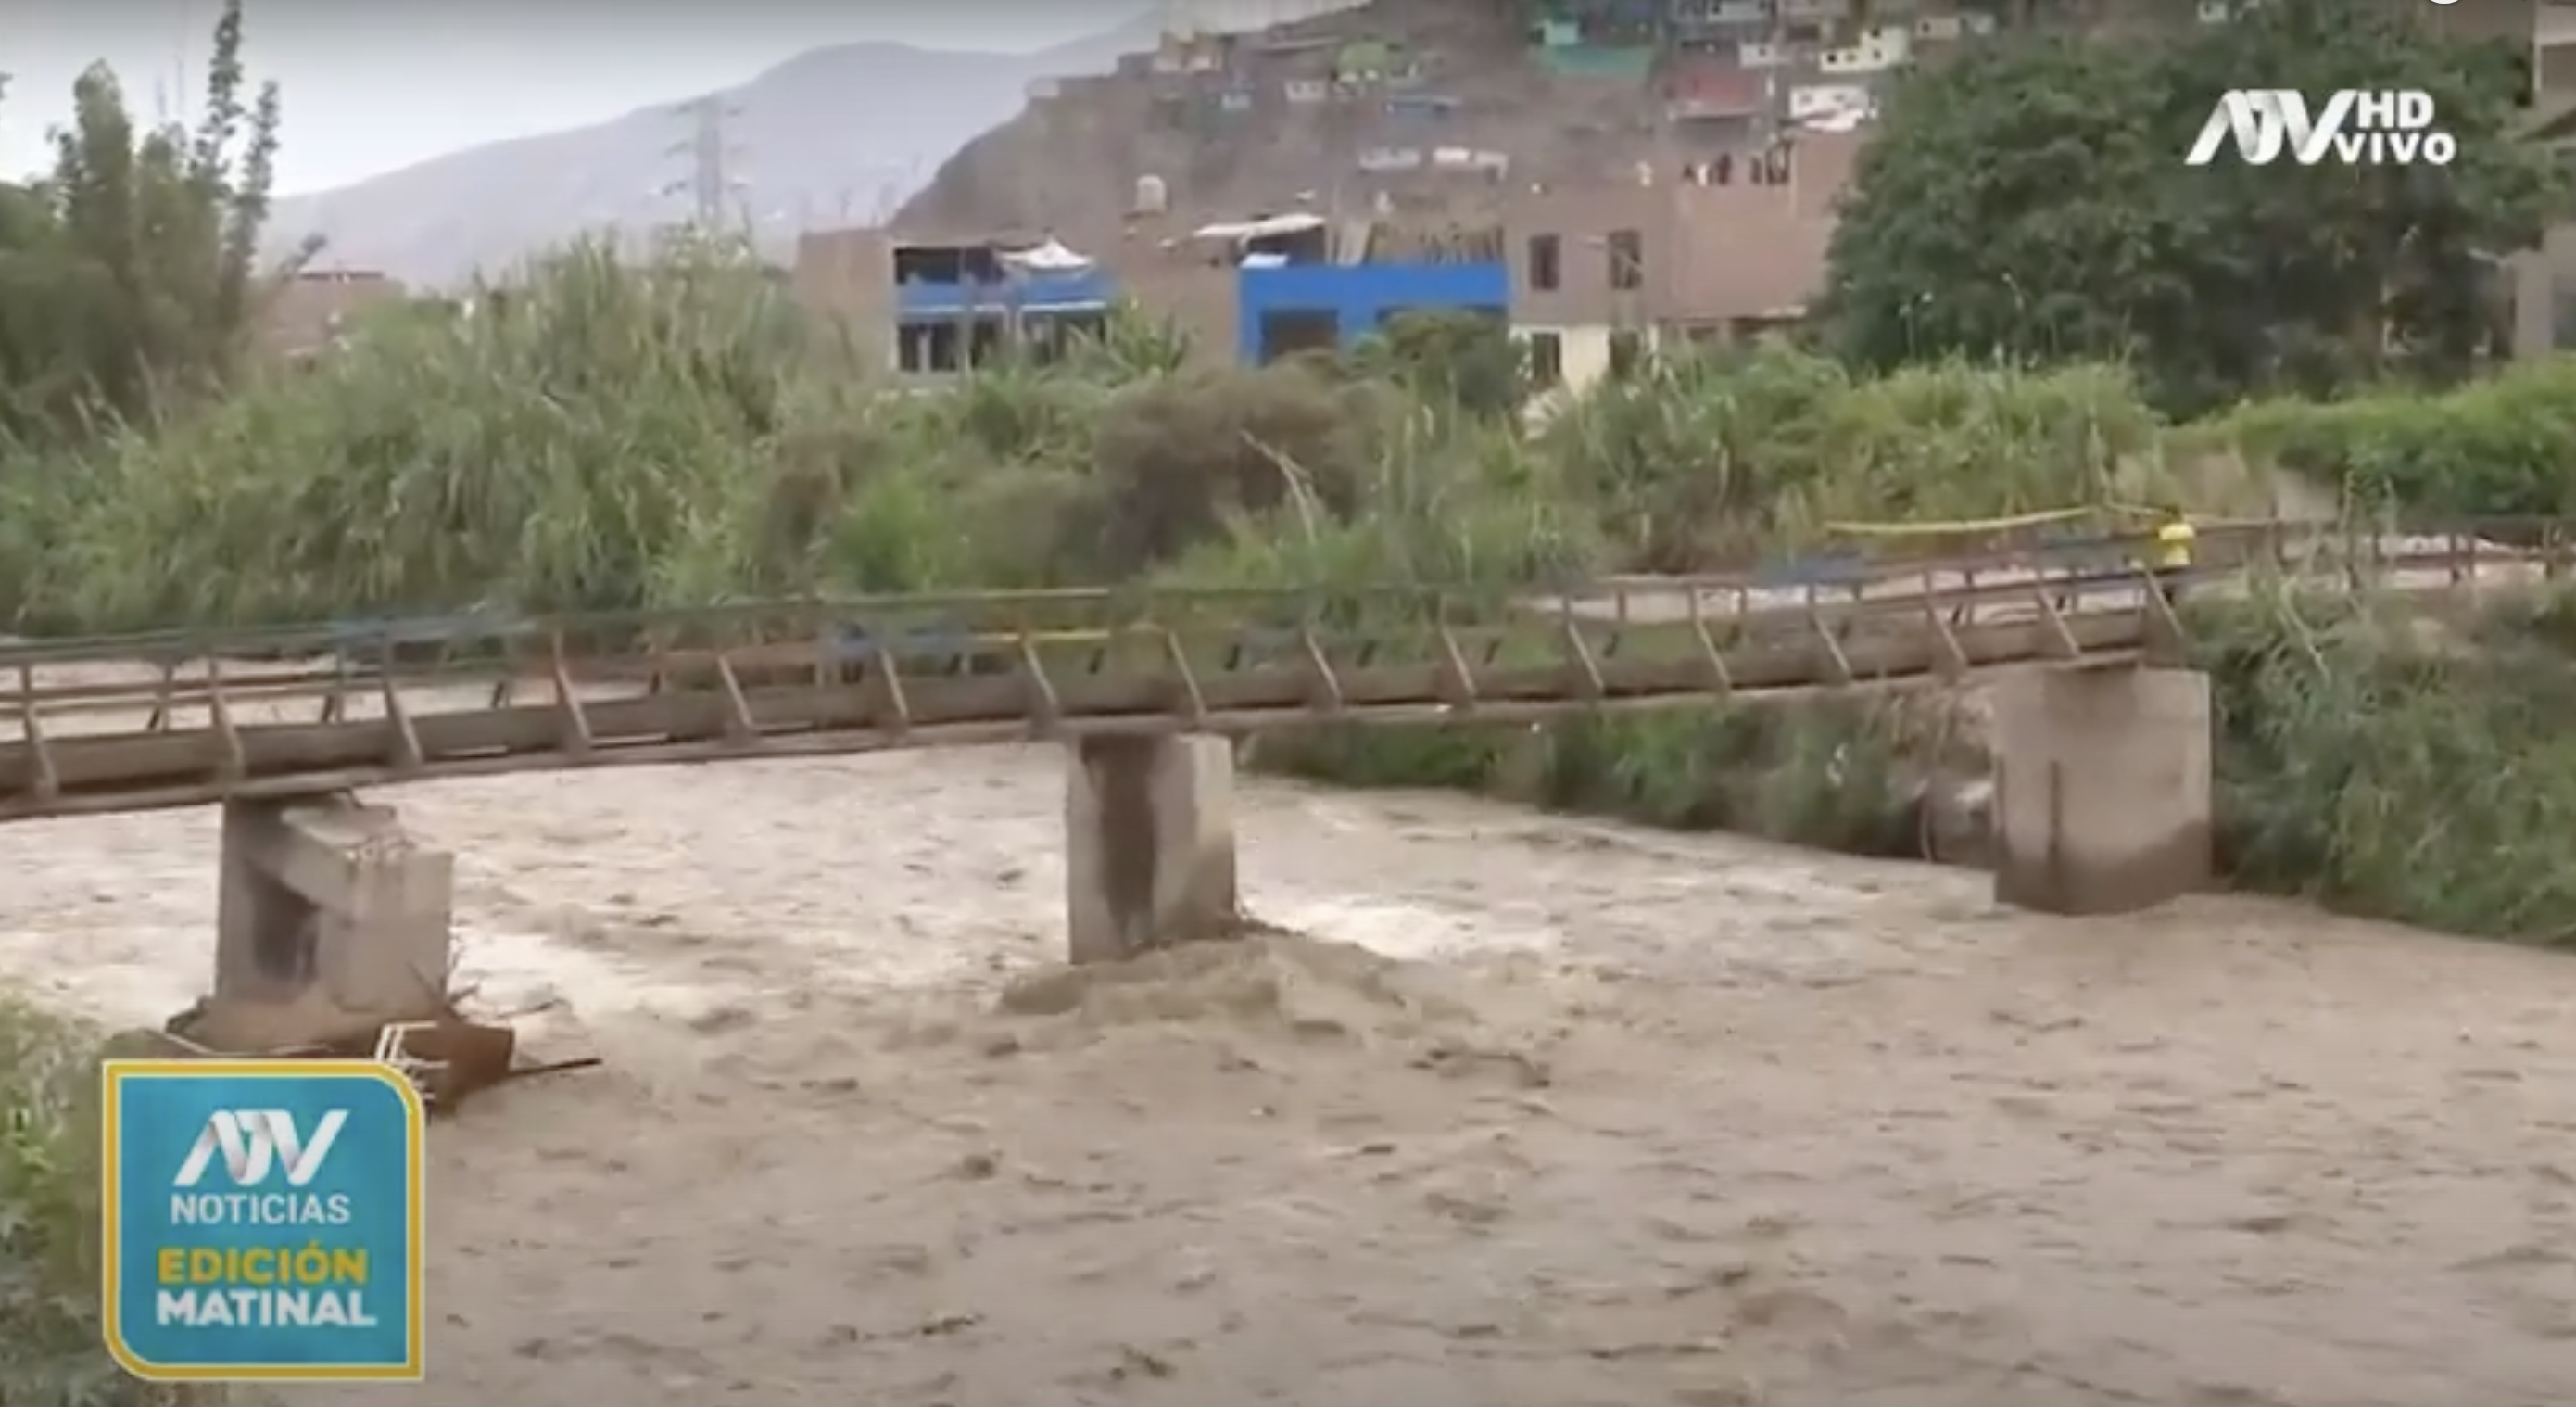 Brücke im Fluss Chillón kurz vor dem Einsturz aufgrund starker Regenfälle.